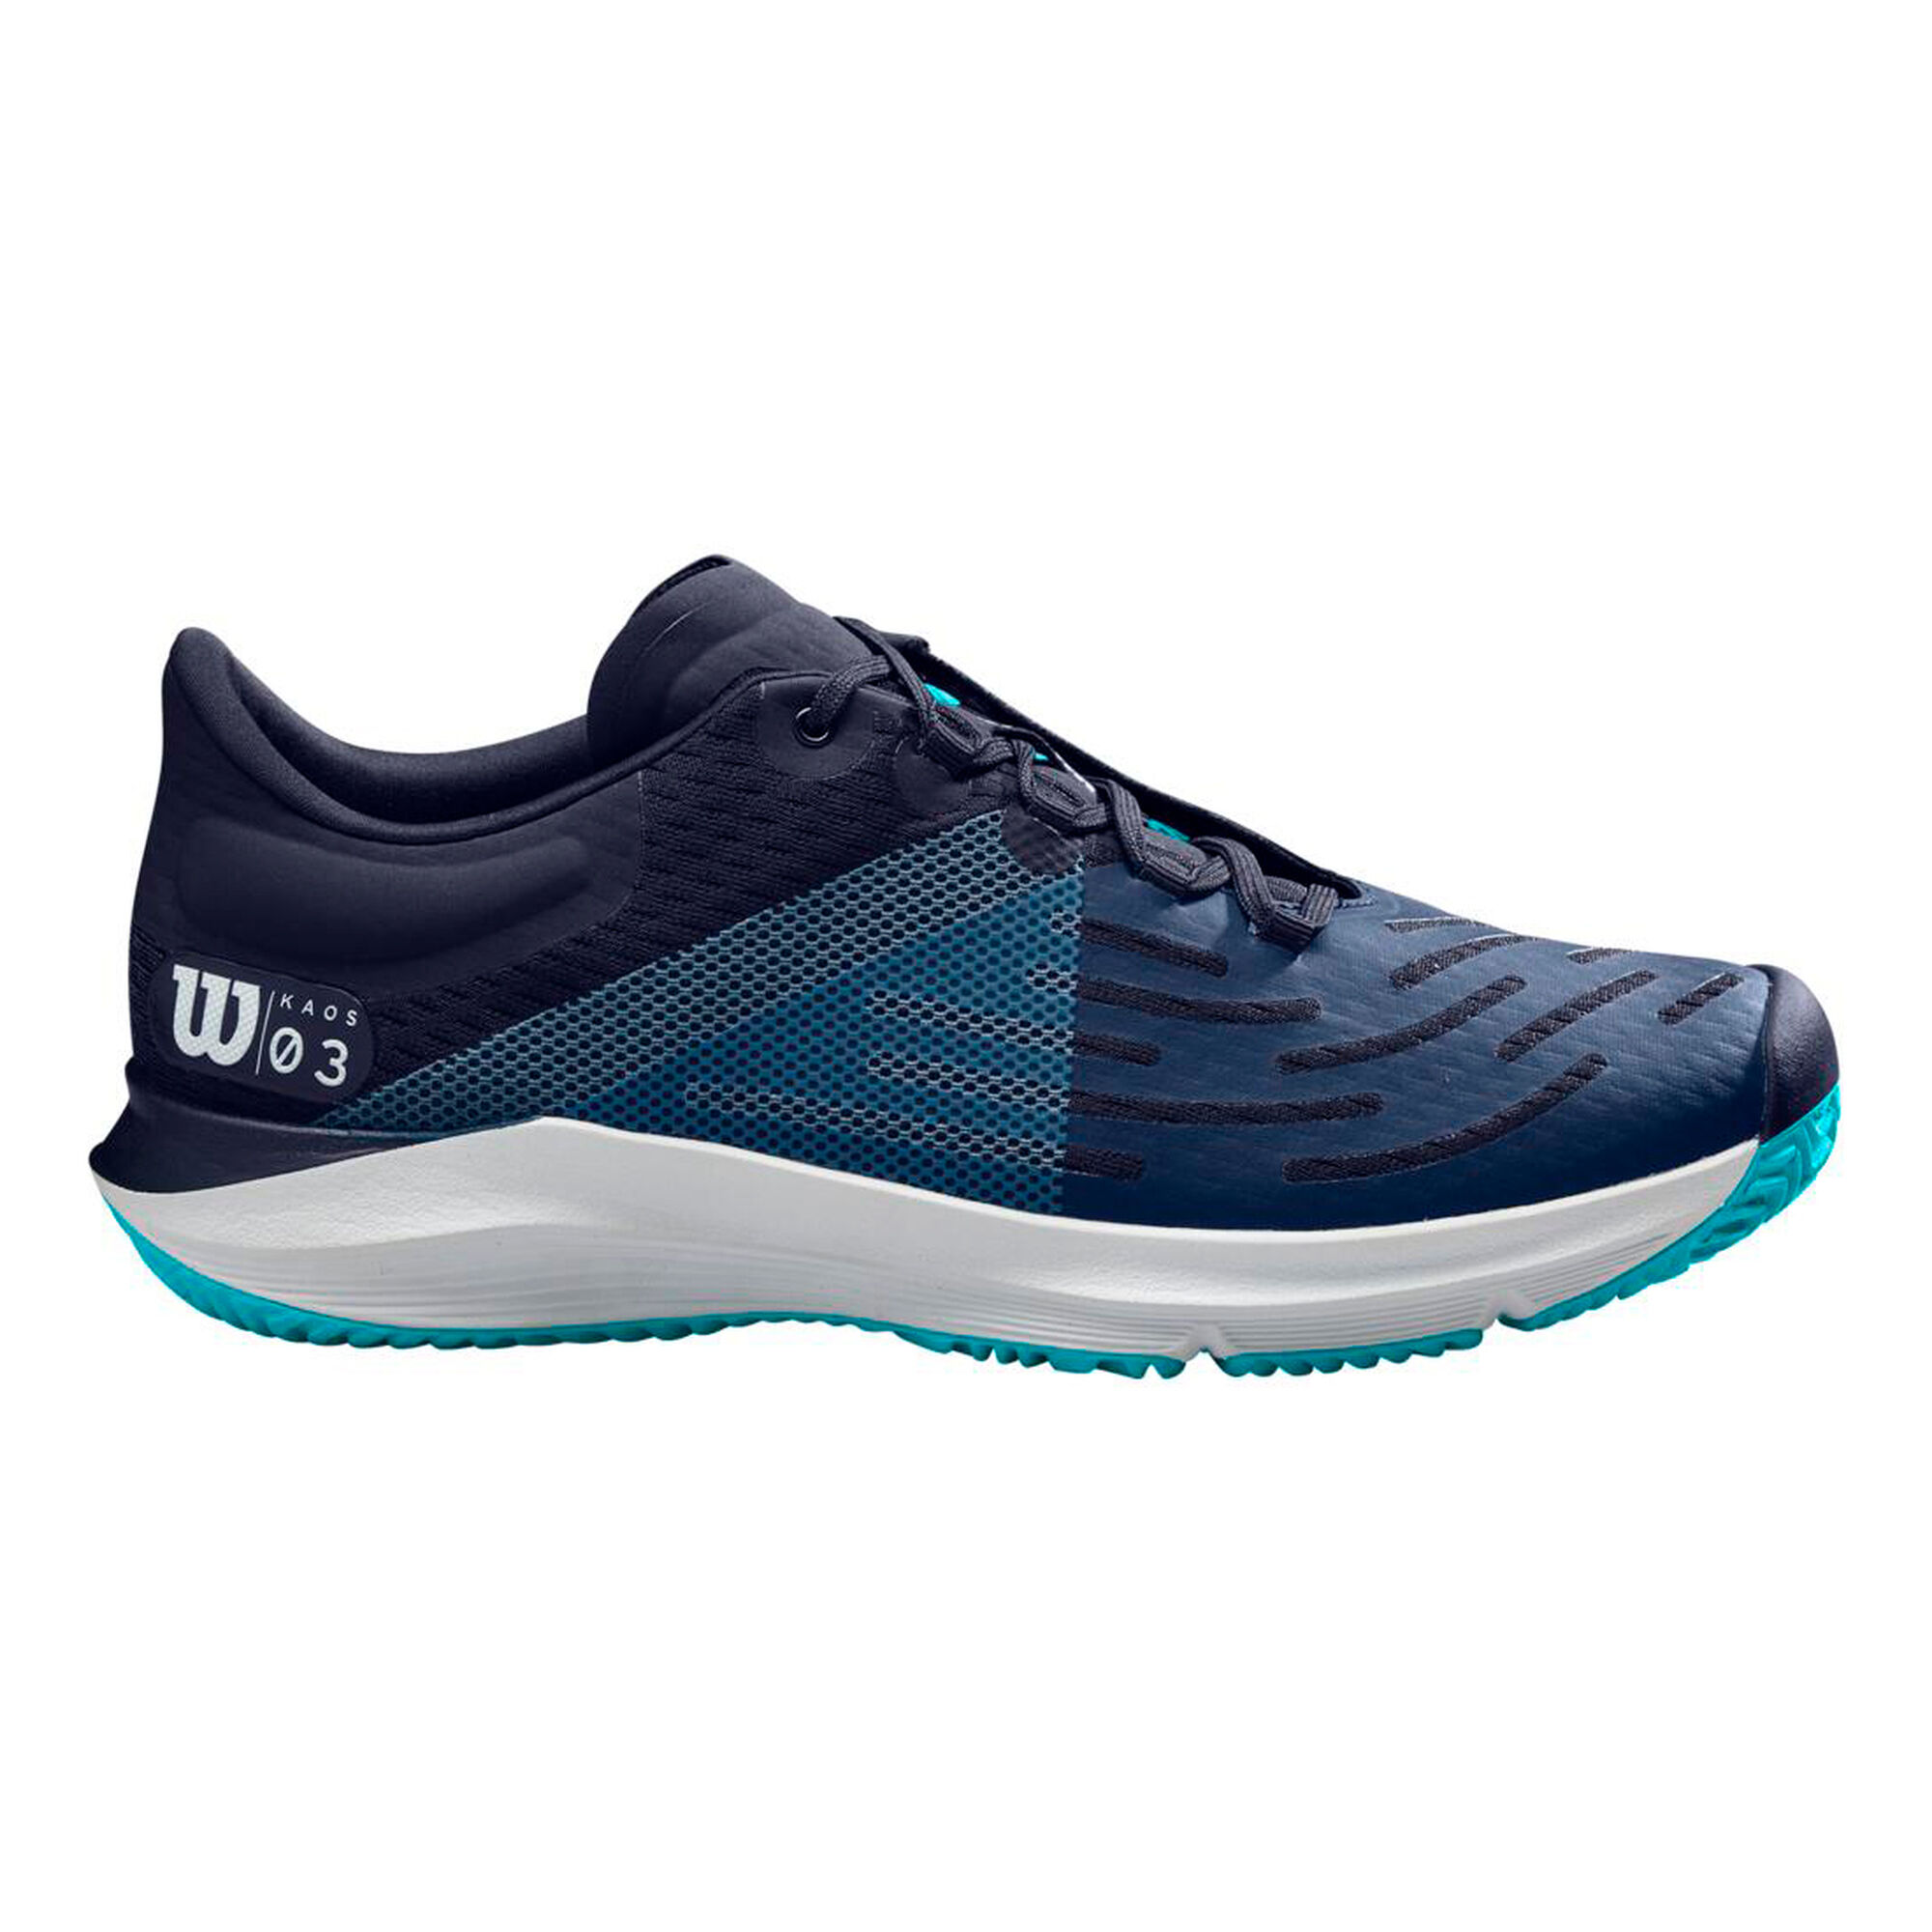  Wilson  Kaos  3 0 Chaussures  Toutes Surfaces Hommes Bleu  